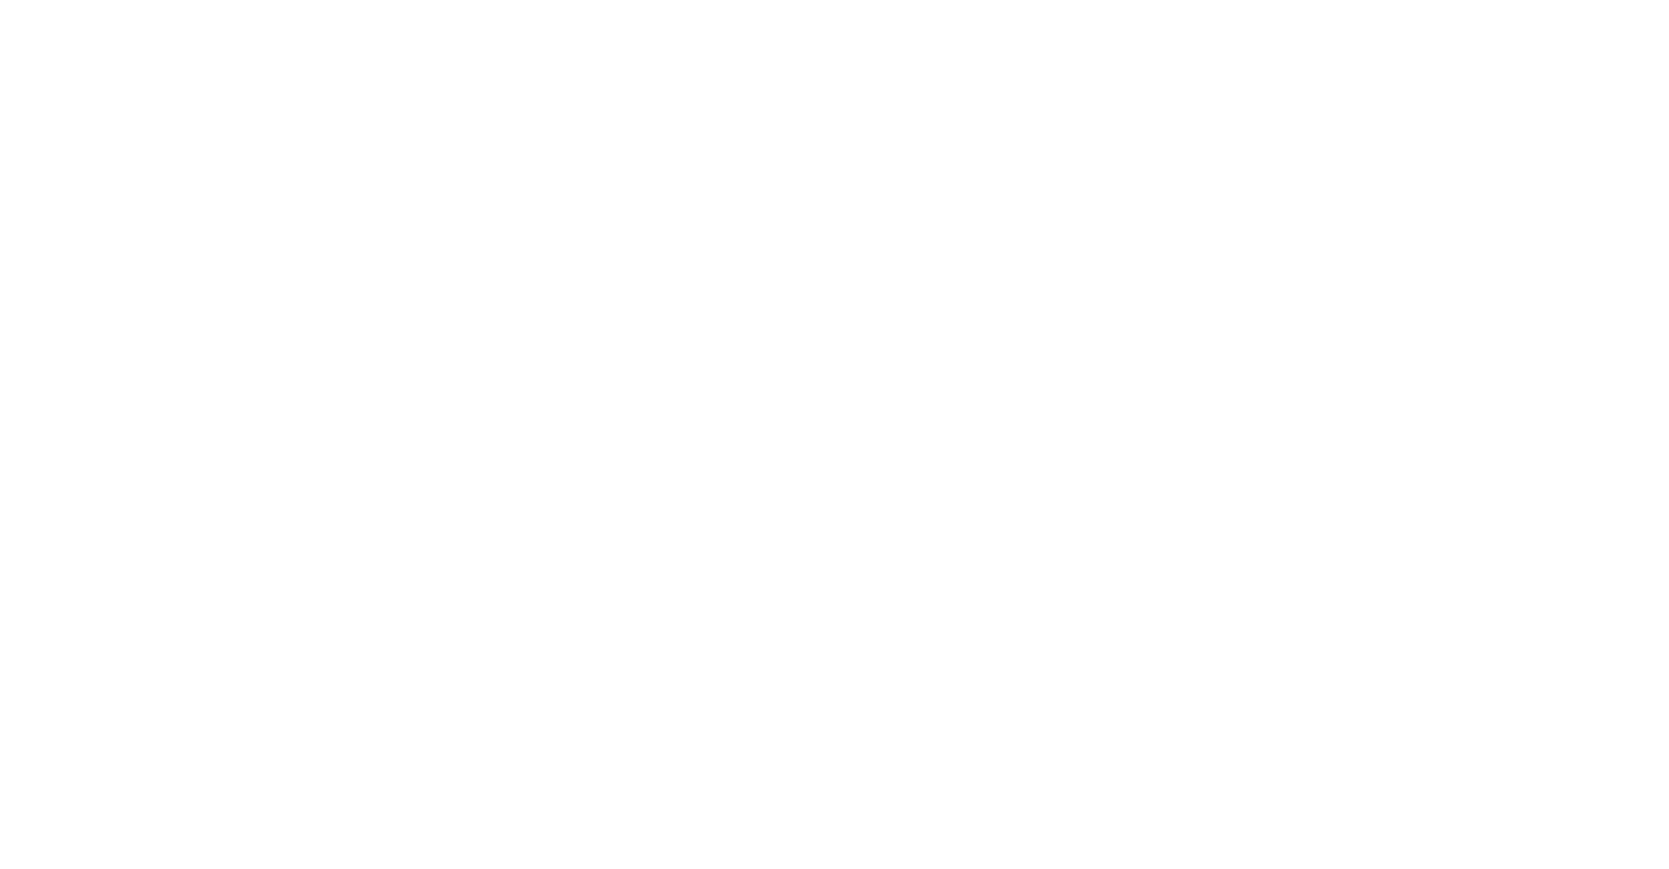 Building Bridges - Text